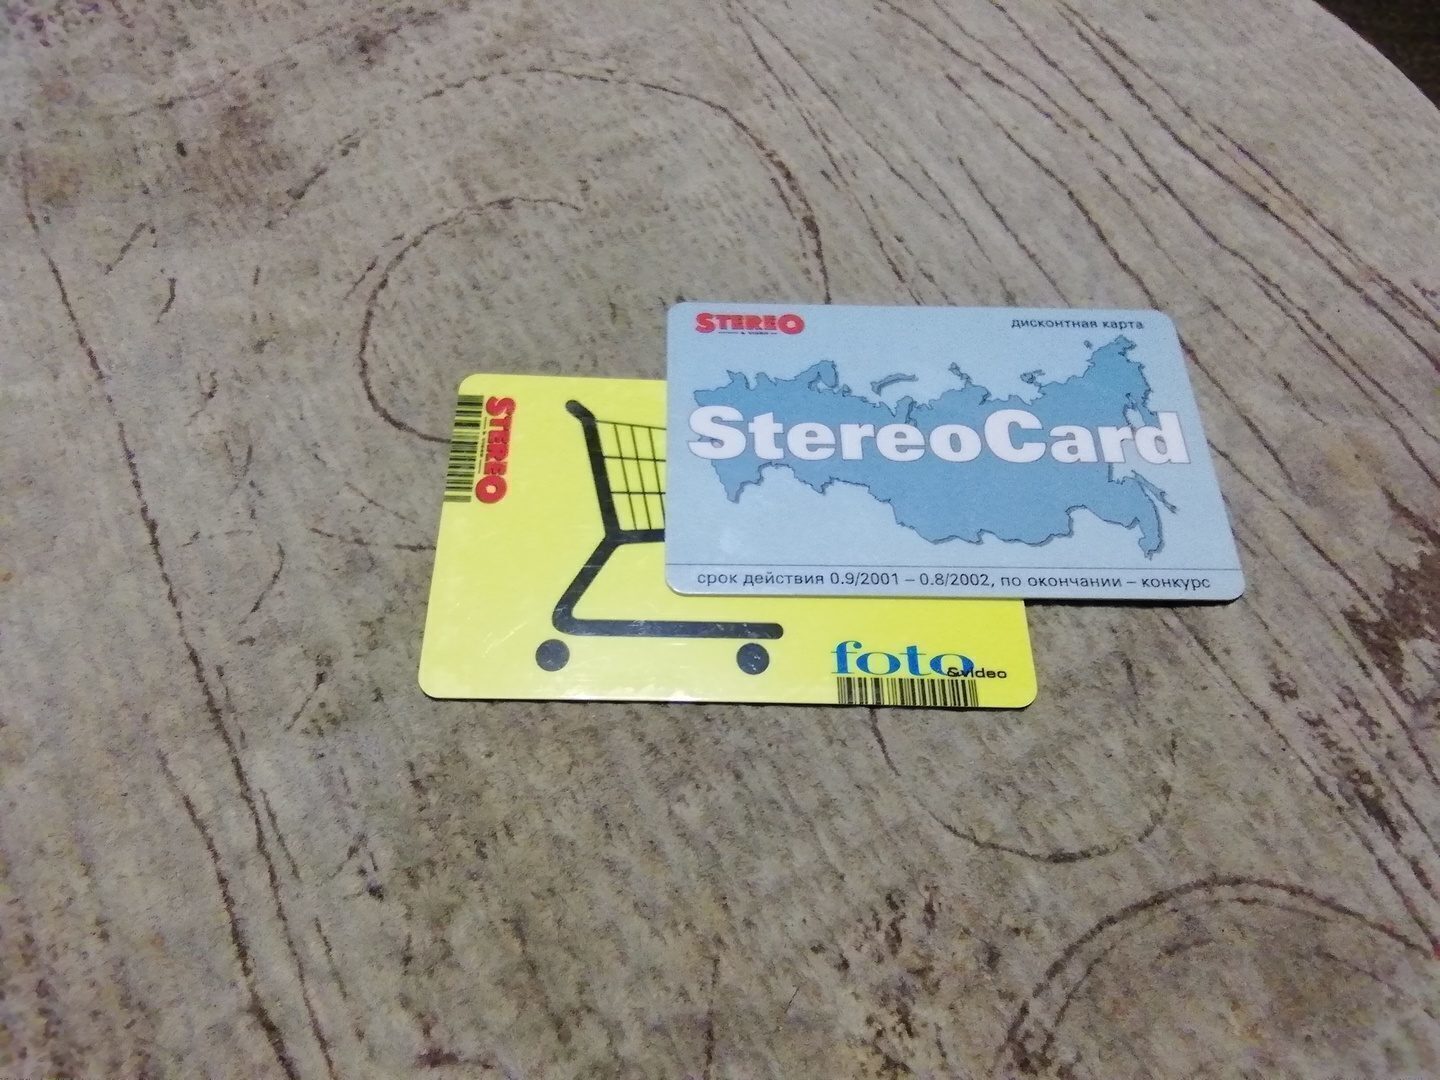 Нашел StereoCard и нахлынула ностальгия